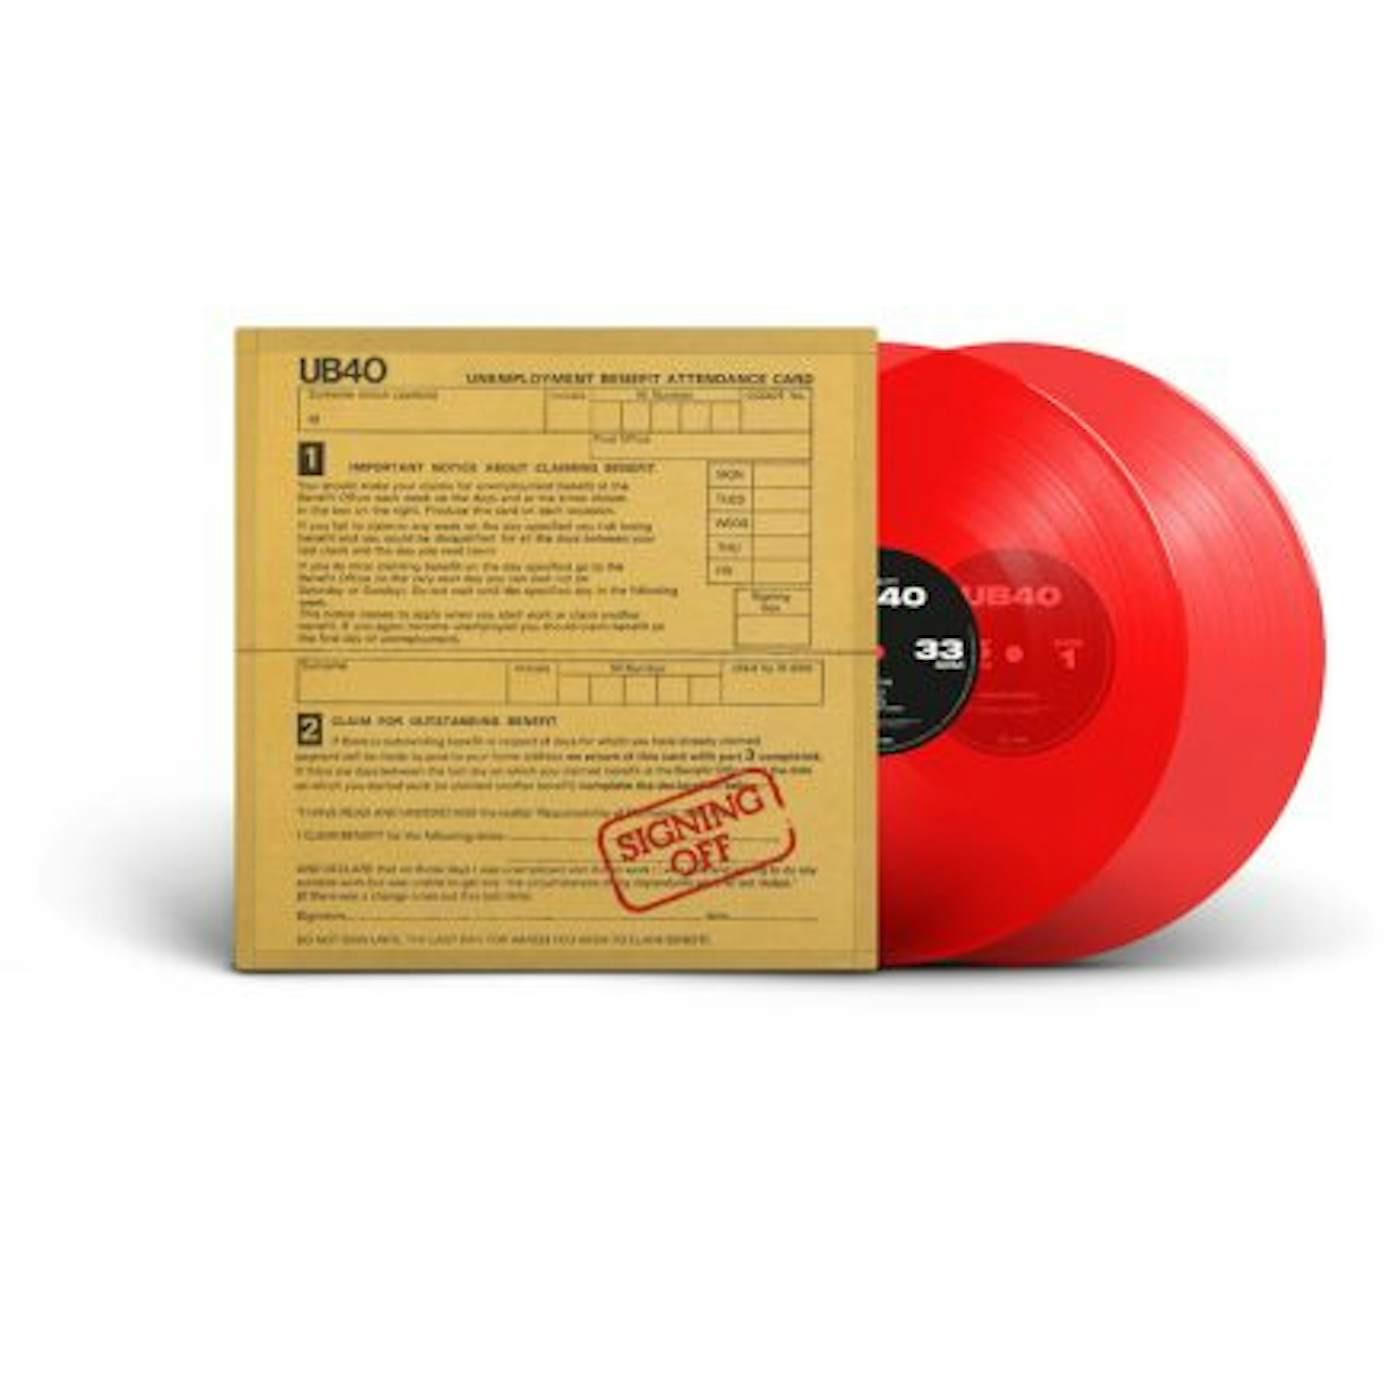 UB40 Signing Off Vinyl Record